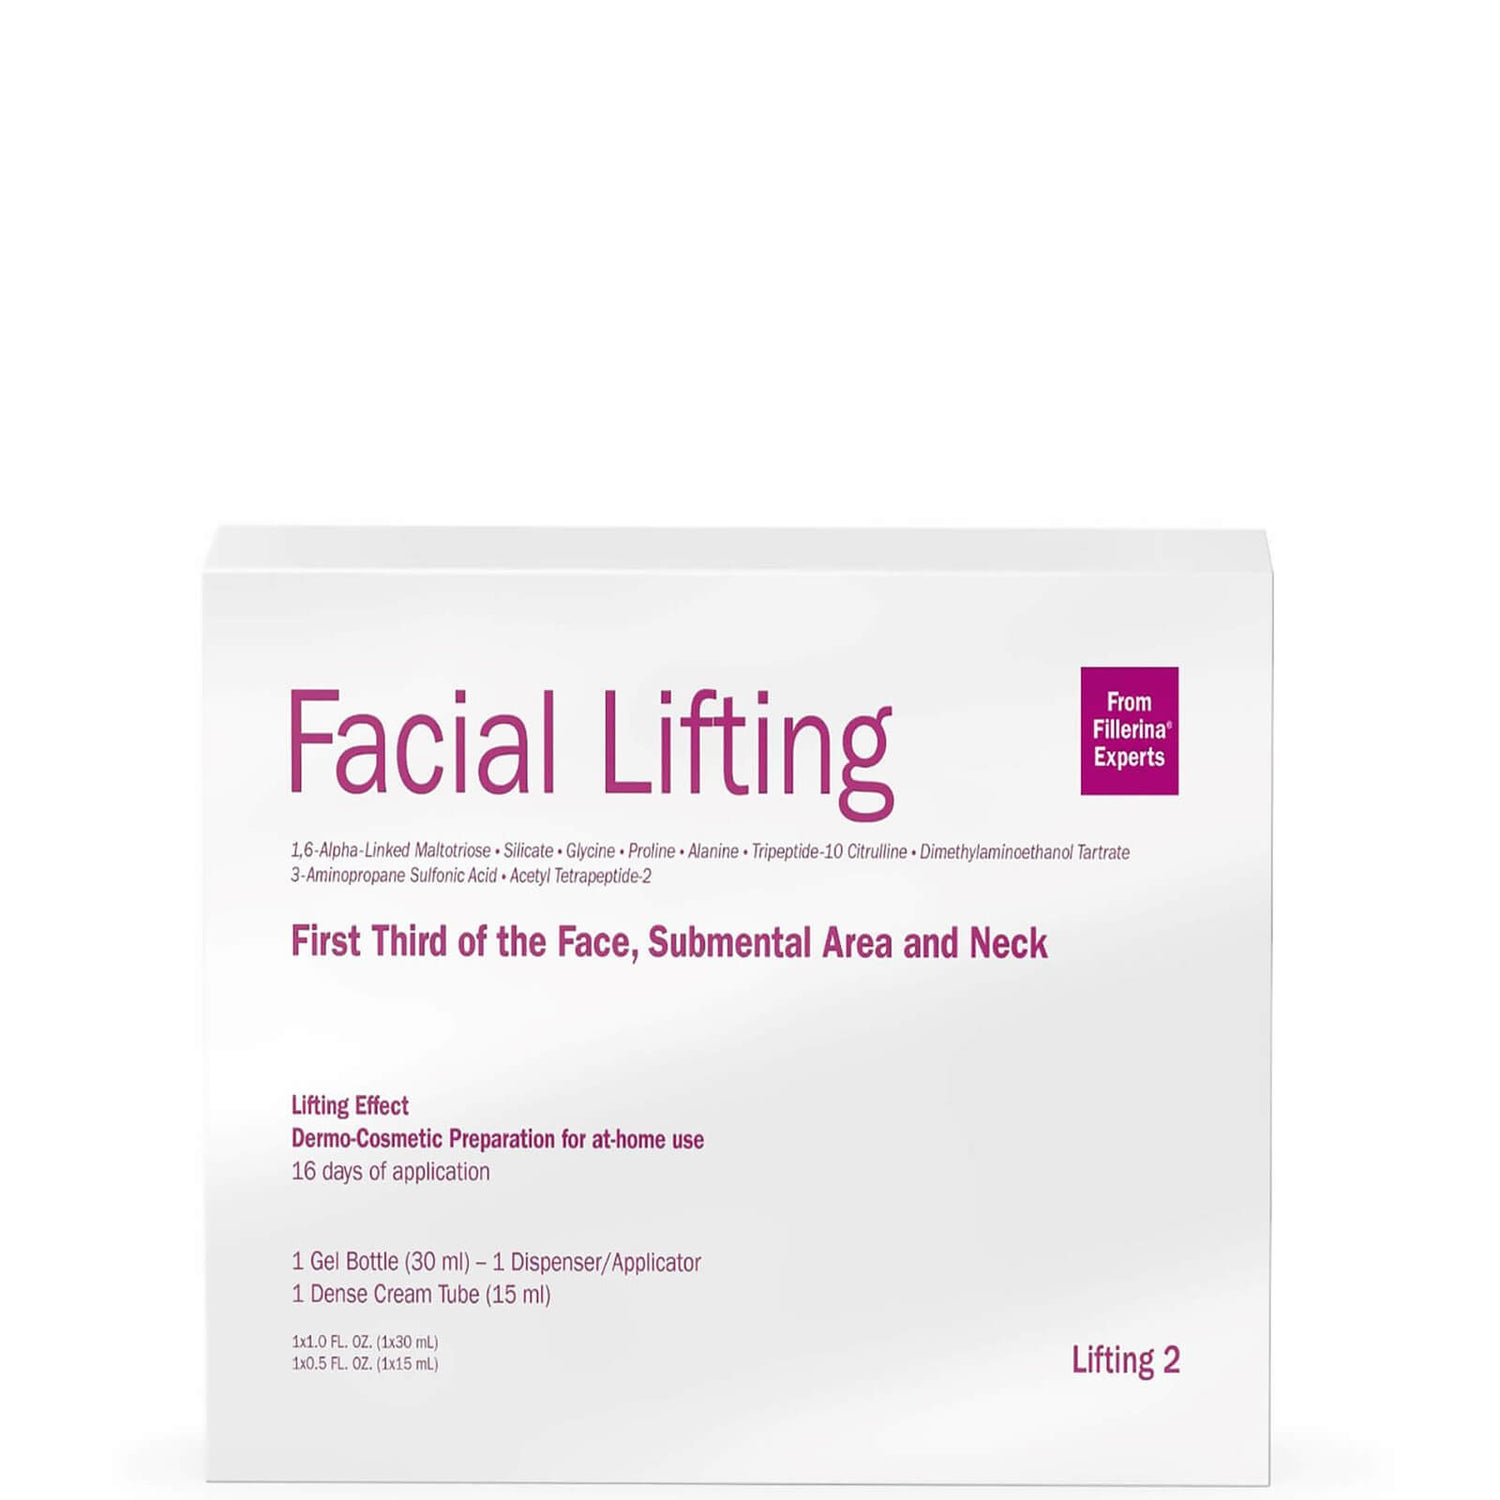 Fillerina Labo Facial Lifting Treatment - Grade 2 1.5 oz